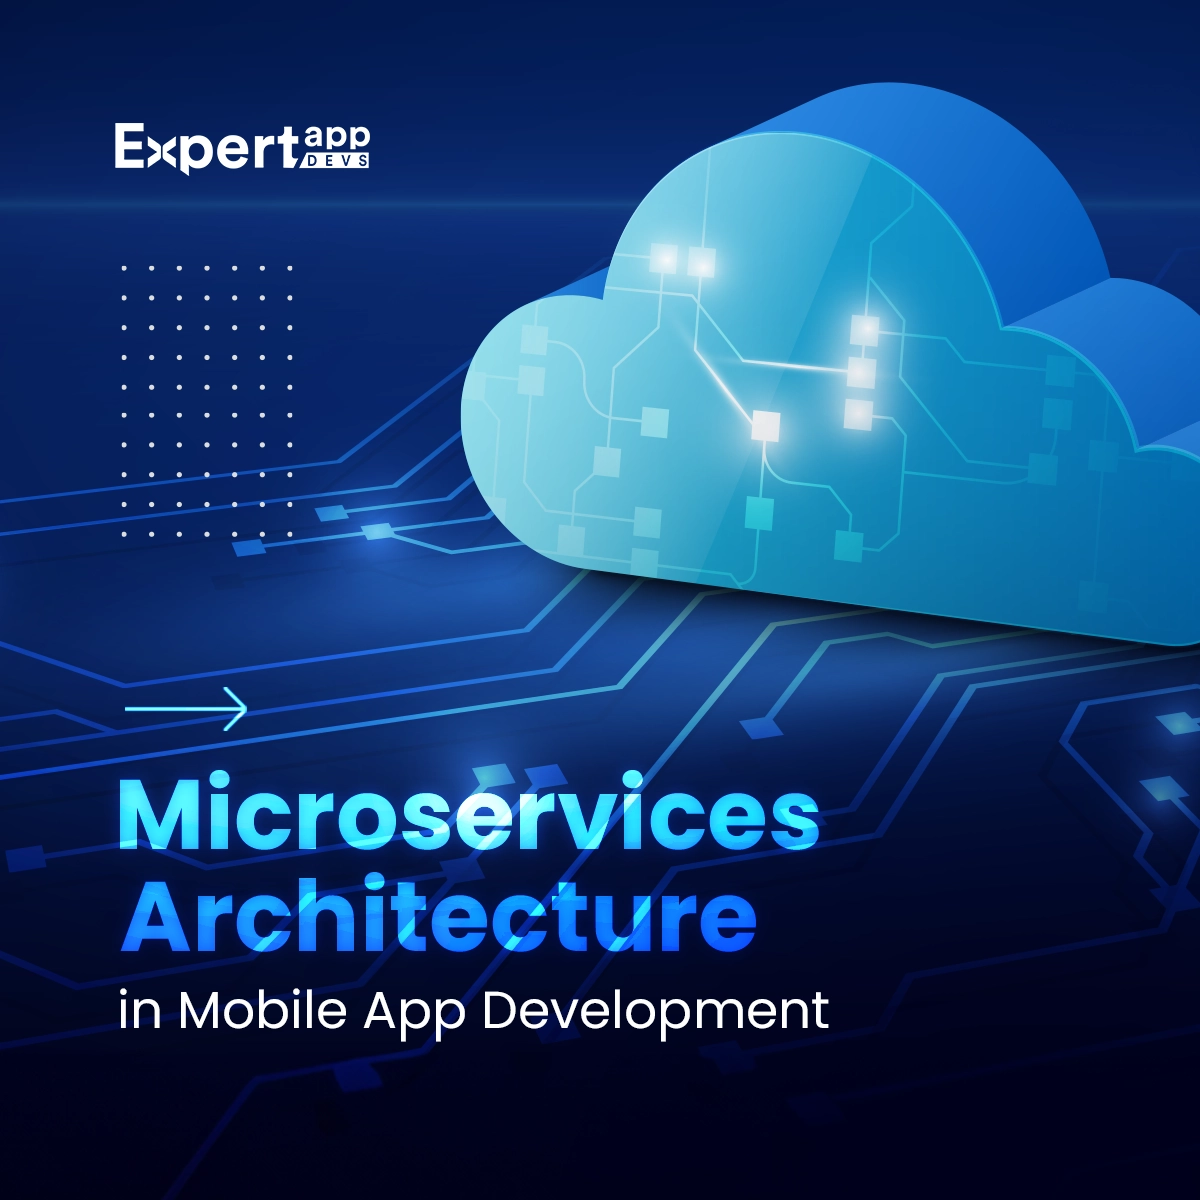 Microservices Architecture in Mobile App Development